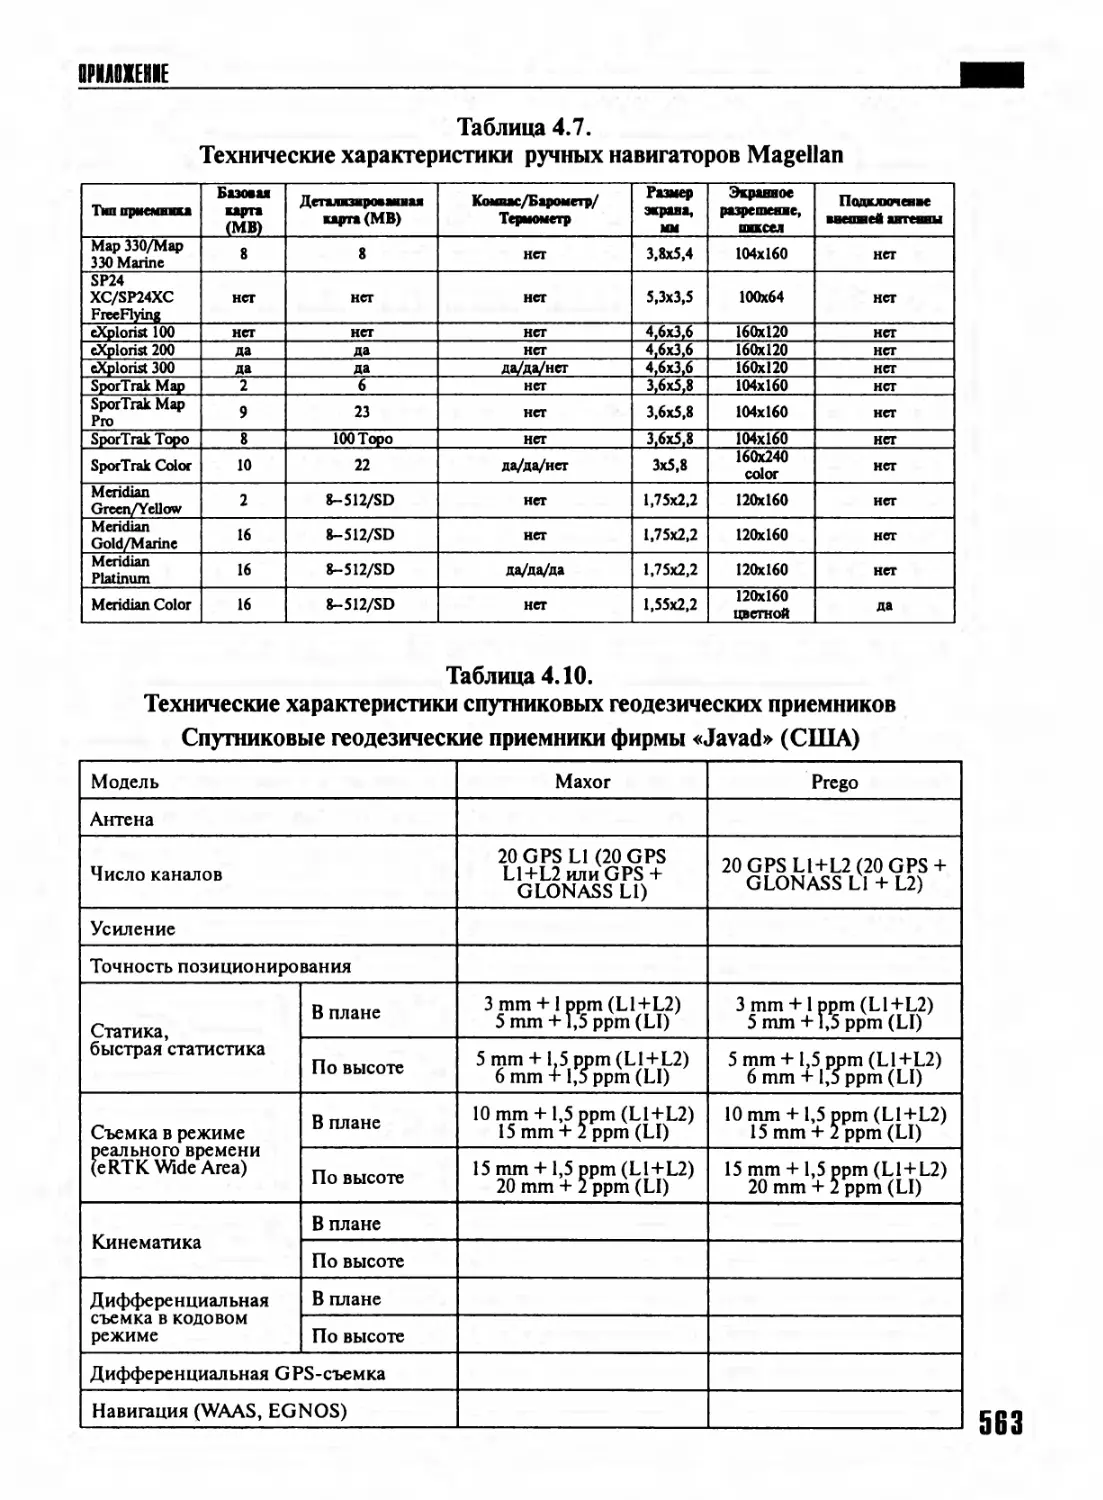 Таблица 4.7. Технические характеристики ручных навигаторов Magellan
Таблица 4.10. Технические характеристики спутниковых геодезических приемников